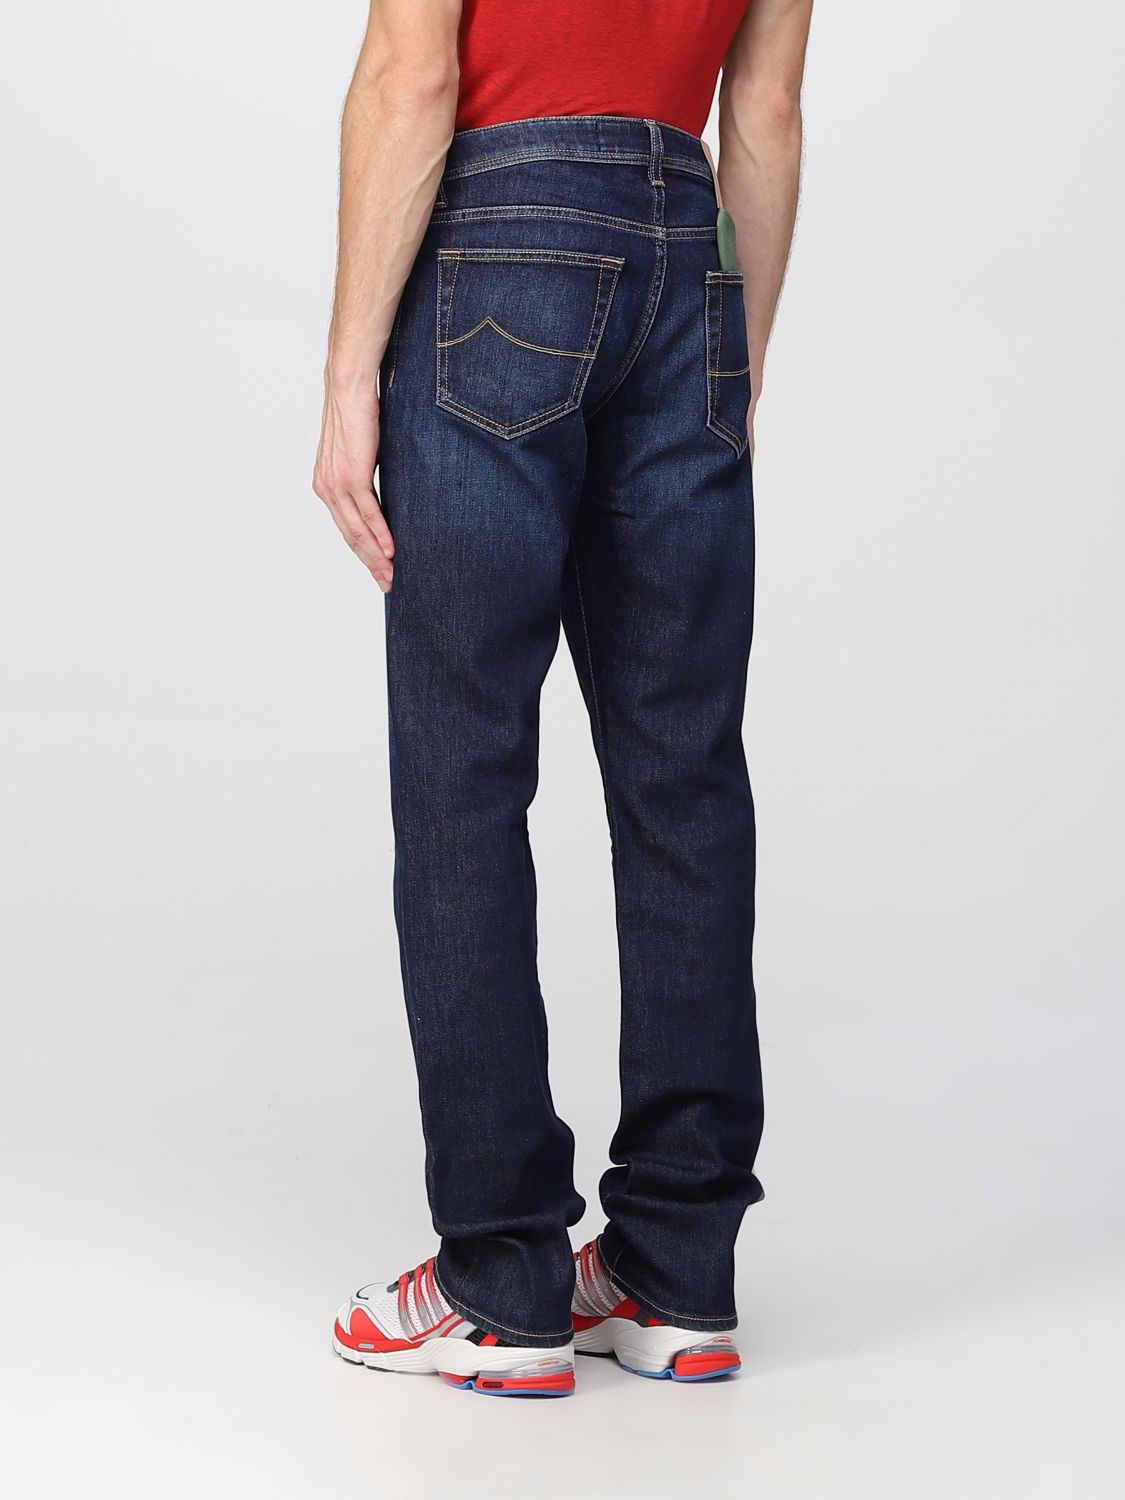 JACOB COHEN: Jeans para hombre, Azul Oscuro | Jeans Cohen UQE0630S3874 en línea en GIGLIO.COM